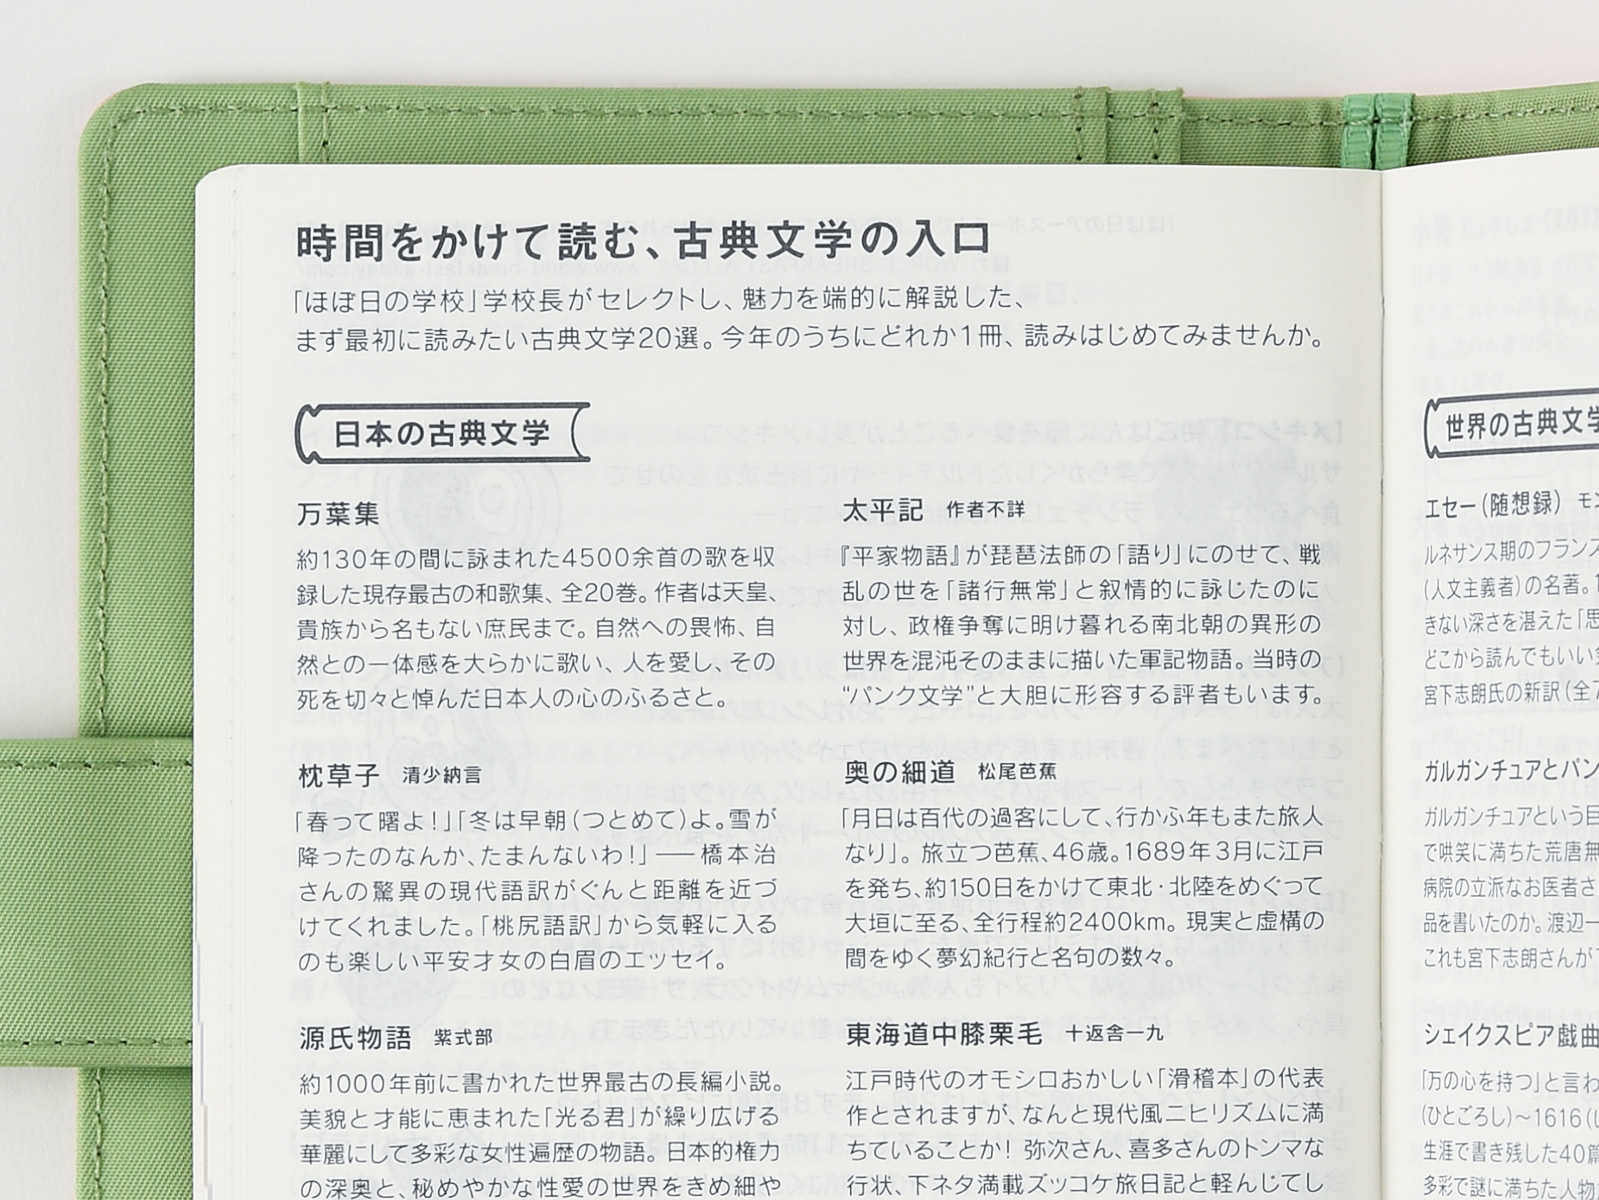 Informational Pages Hobonichi Techo Original Book Buying Guide Hobonichi Techo 19